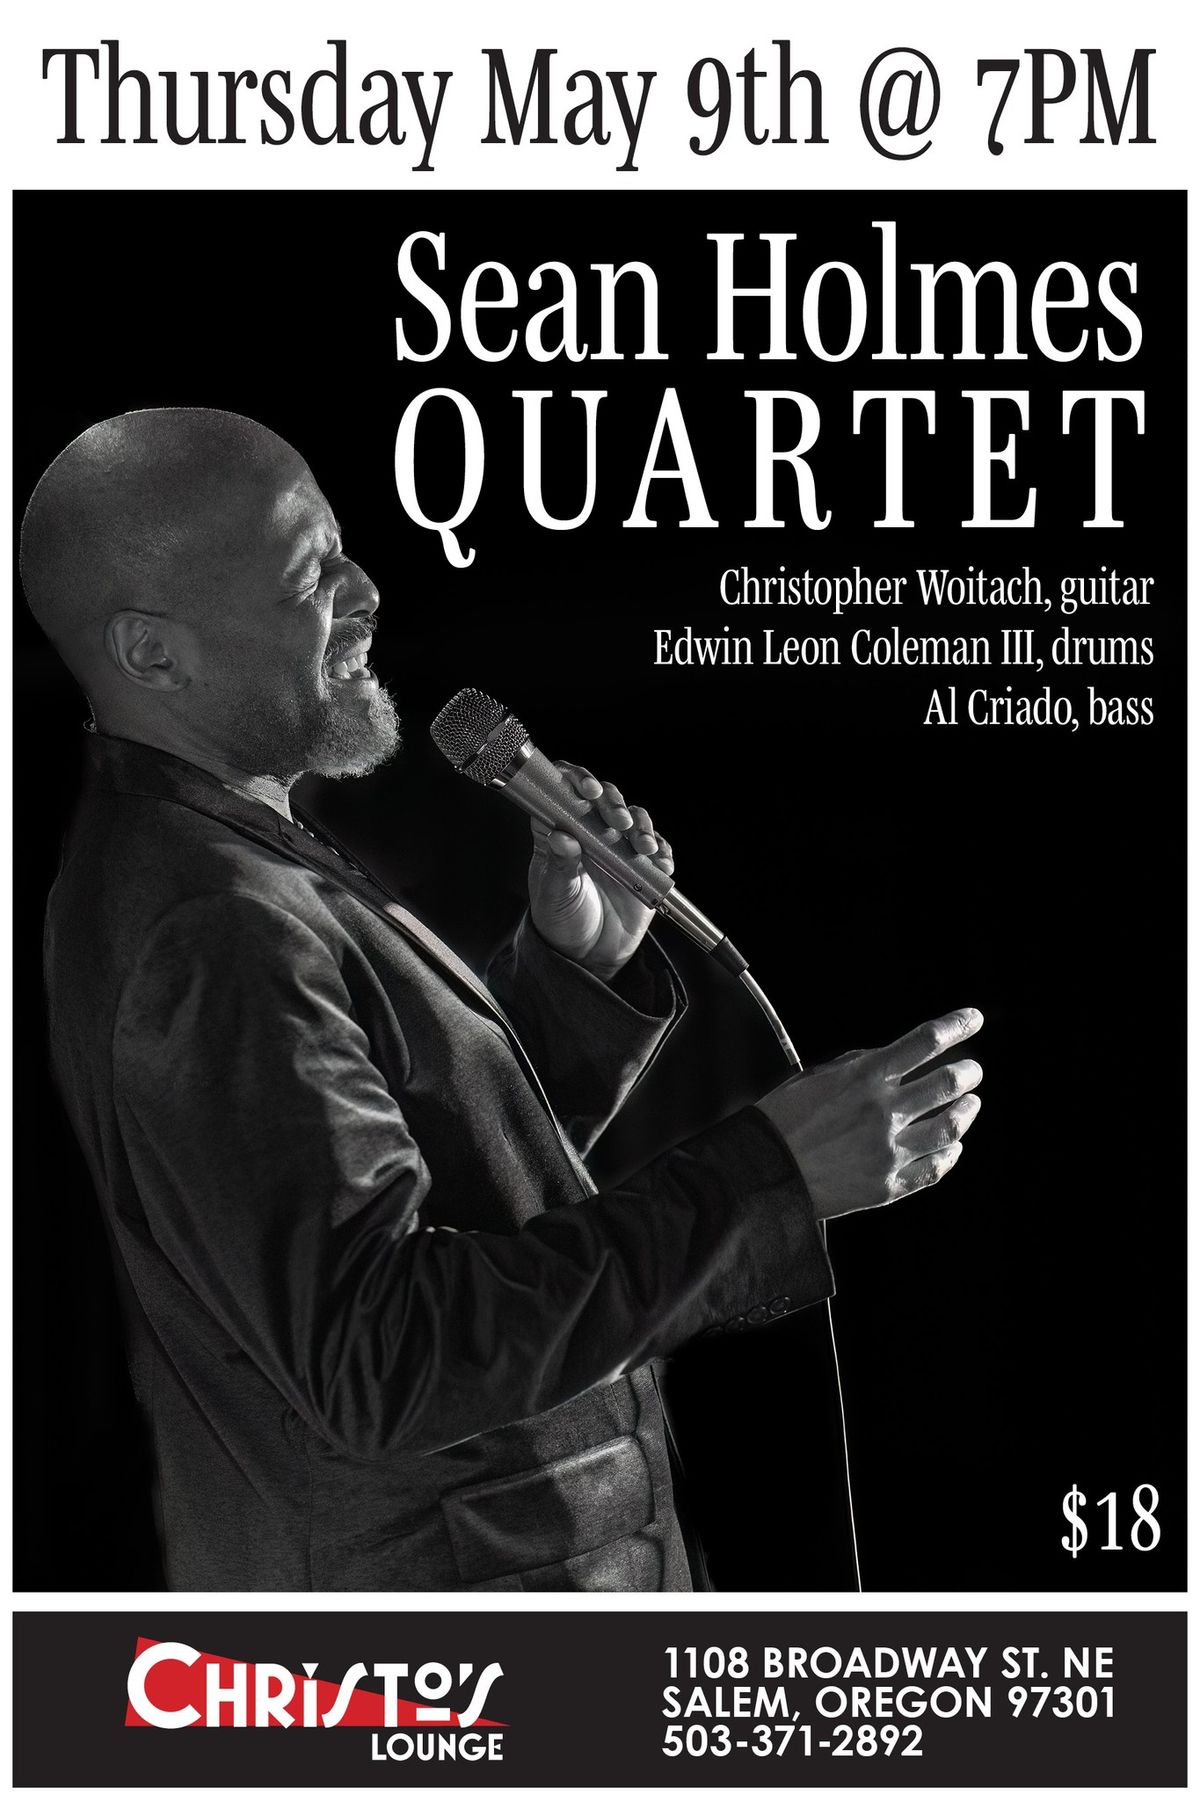 Sean Holmes Quartet